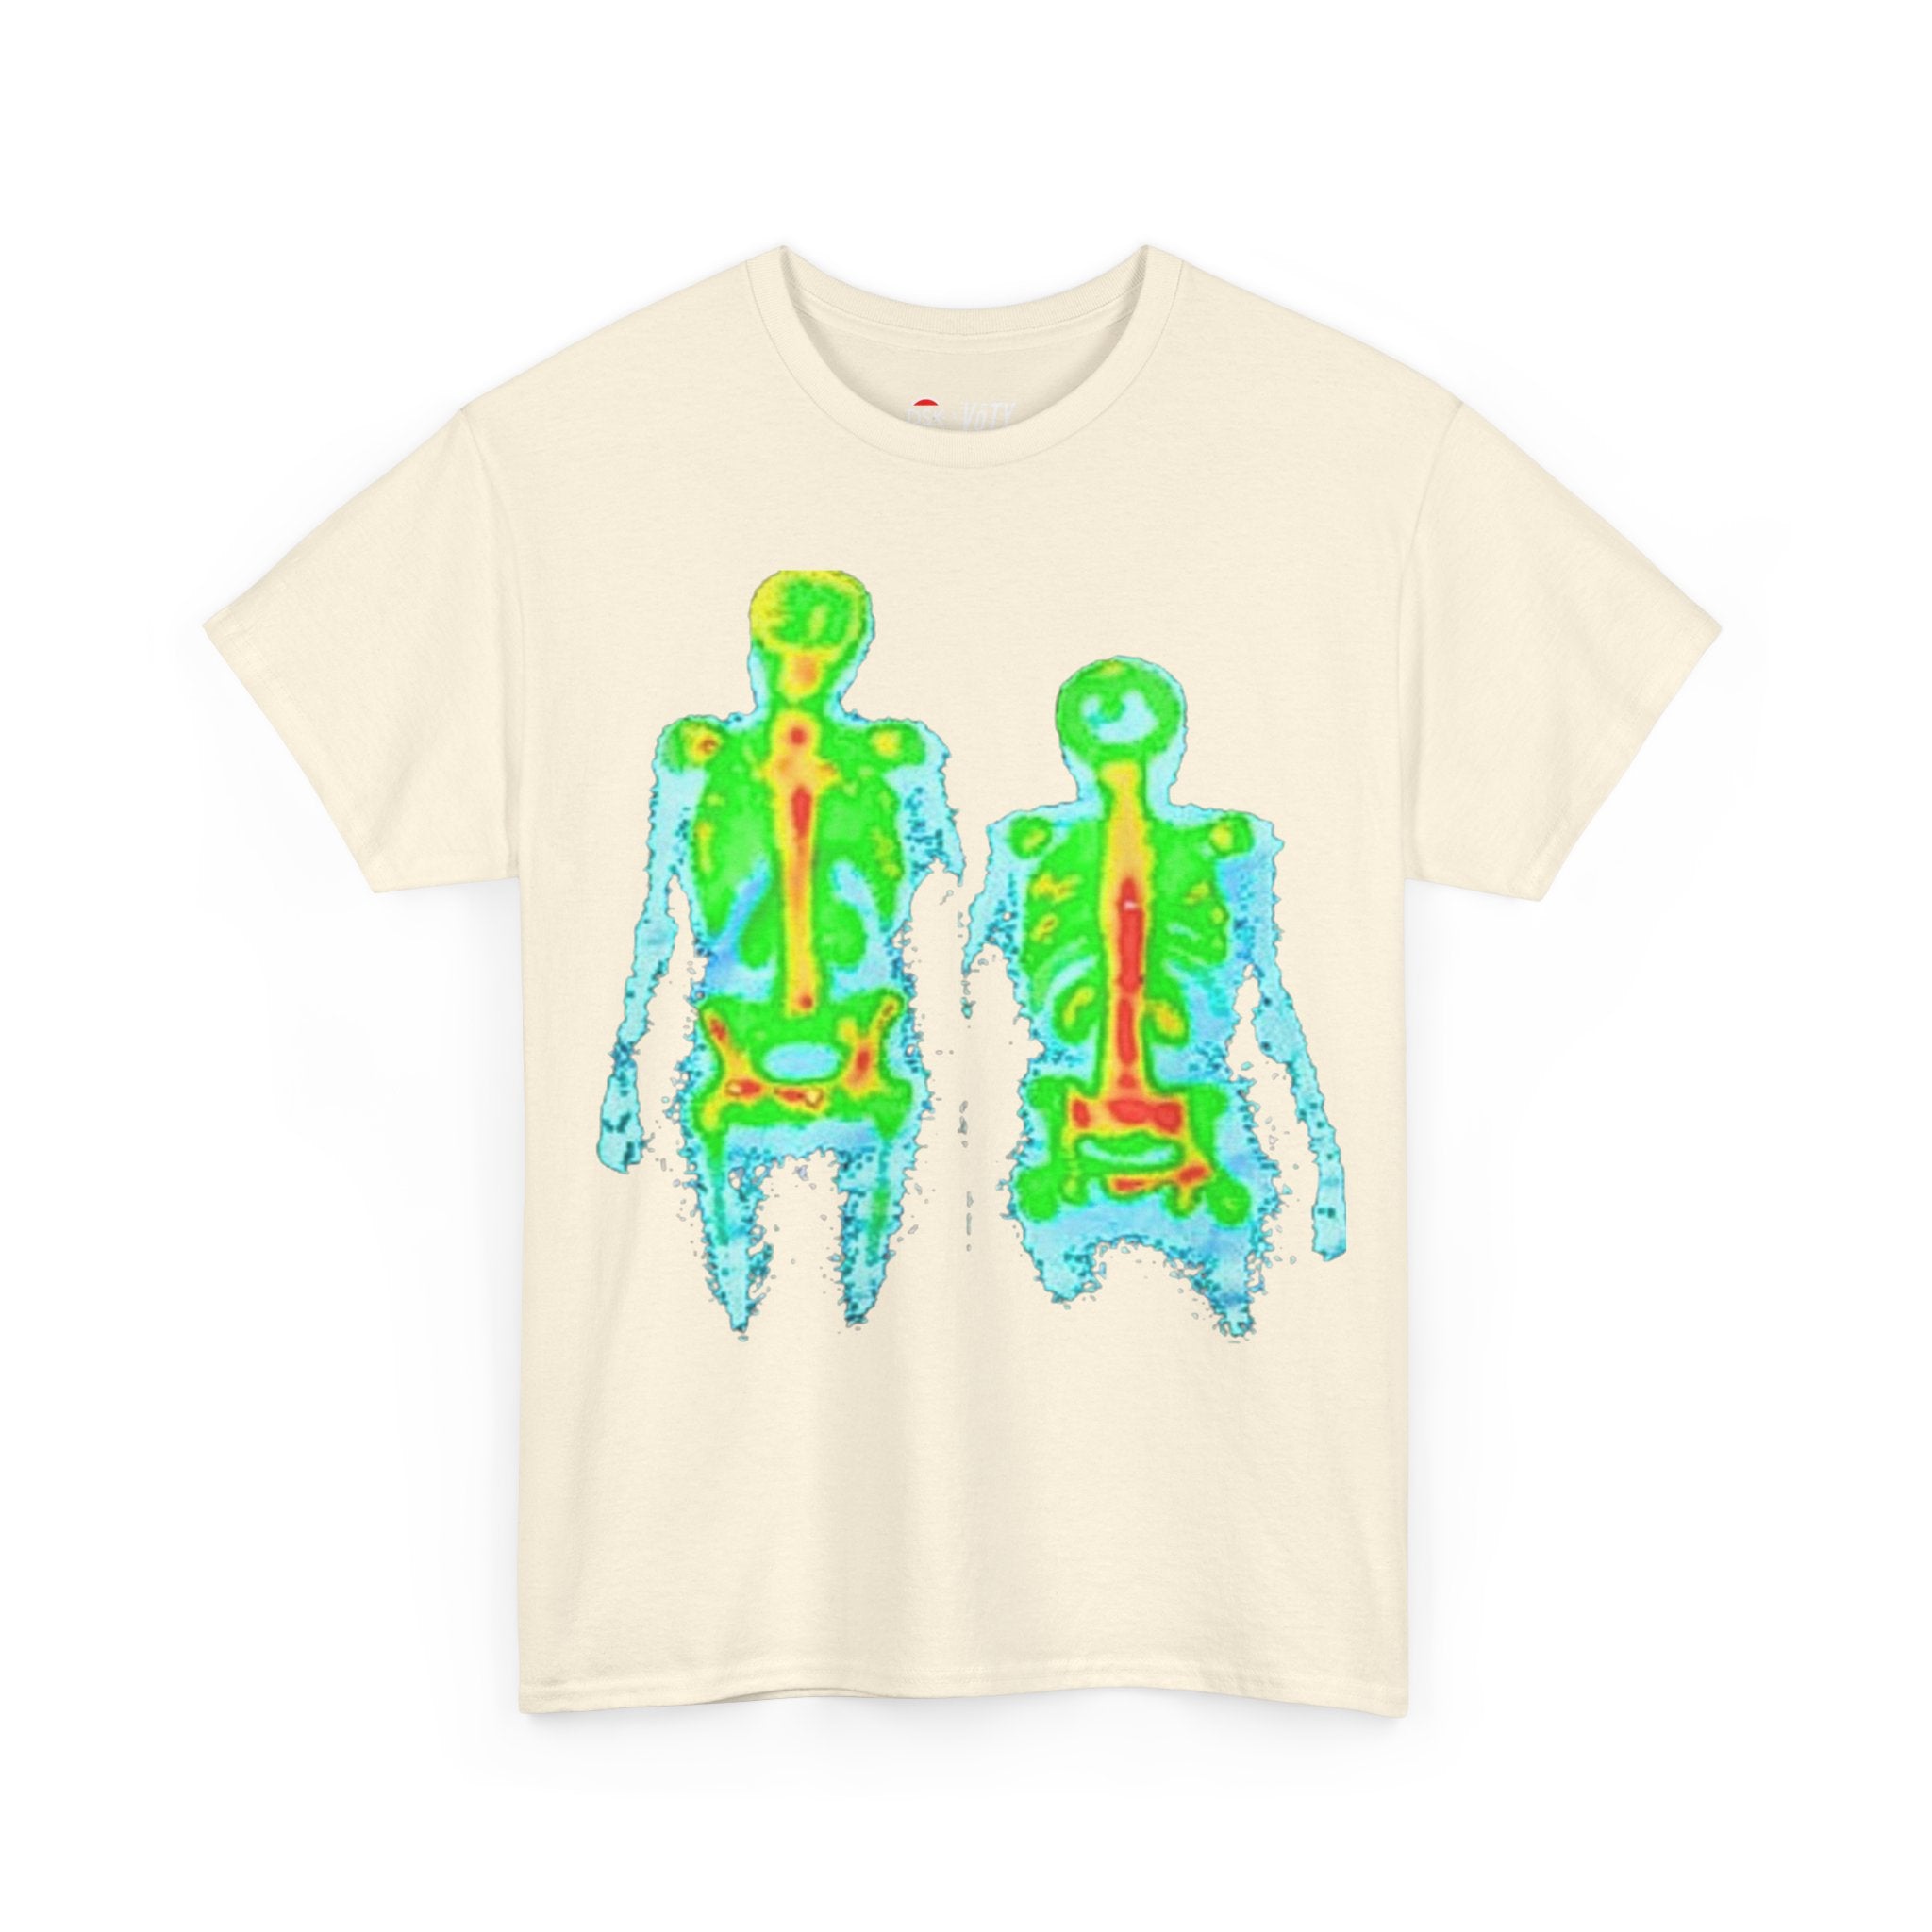 X-Ray T-Shirt